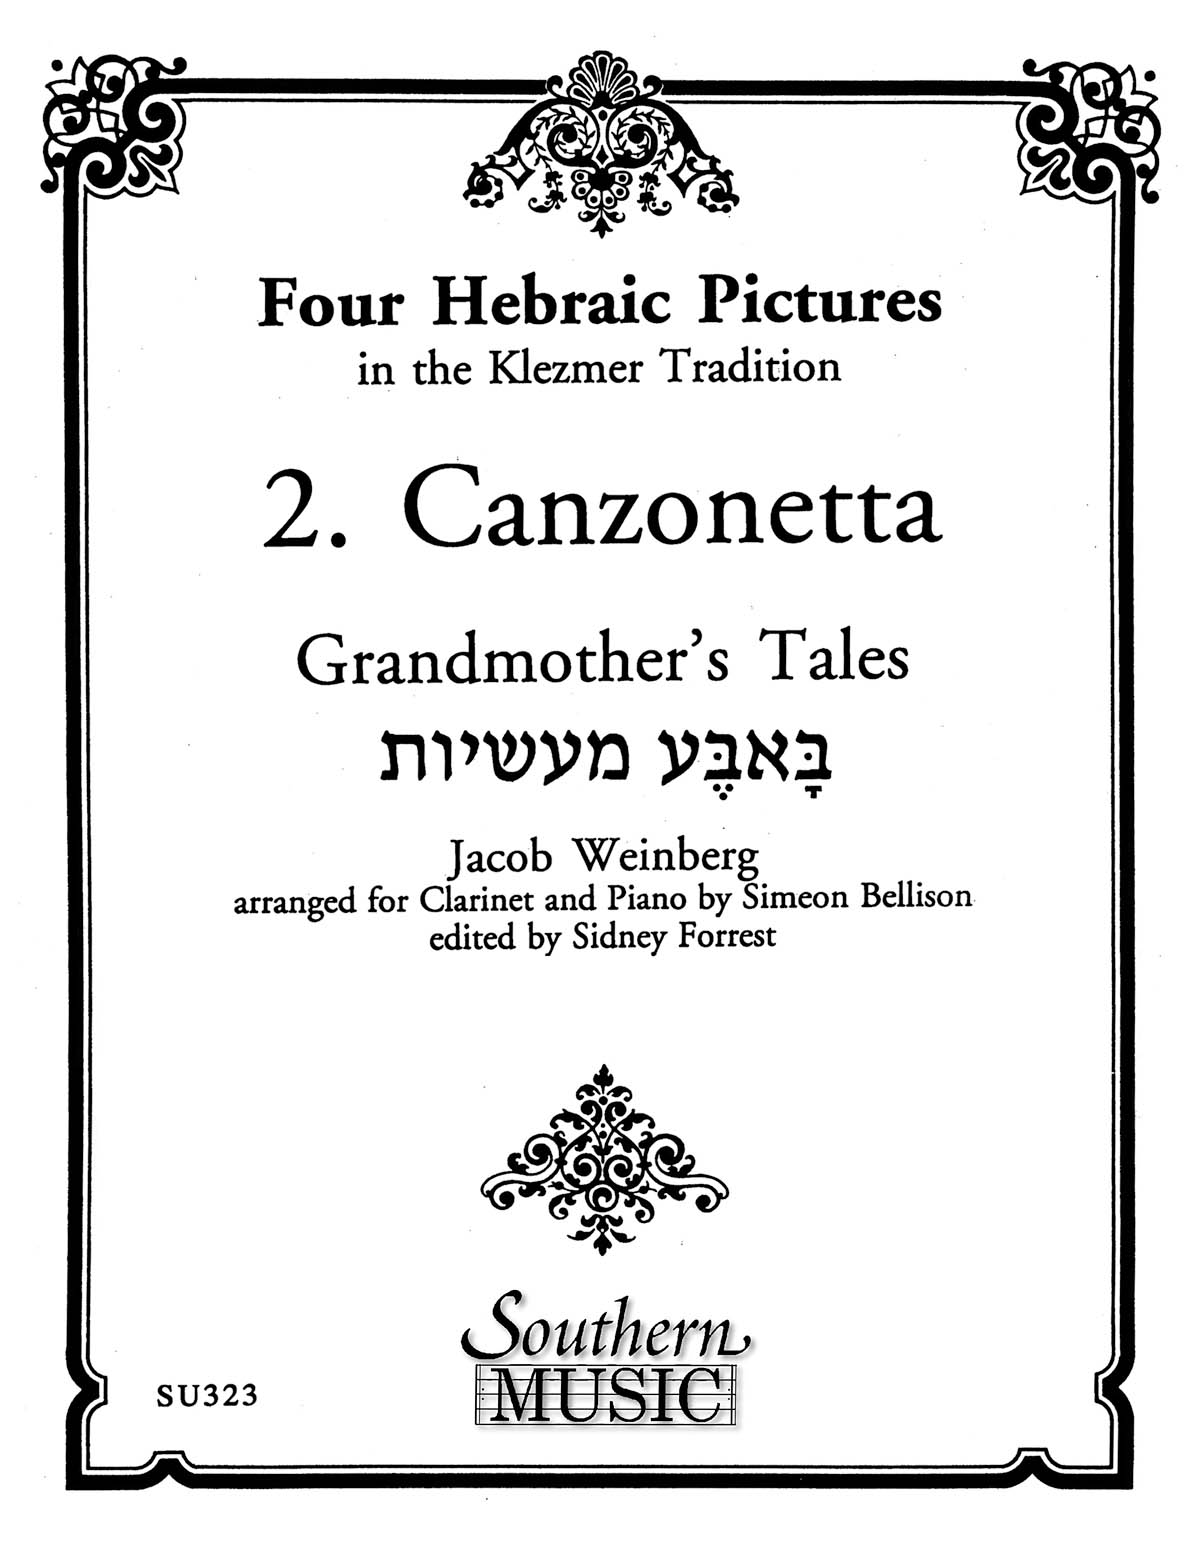 Four Hebraic Pictures (Canzonetta)